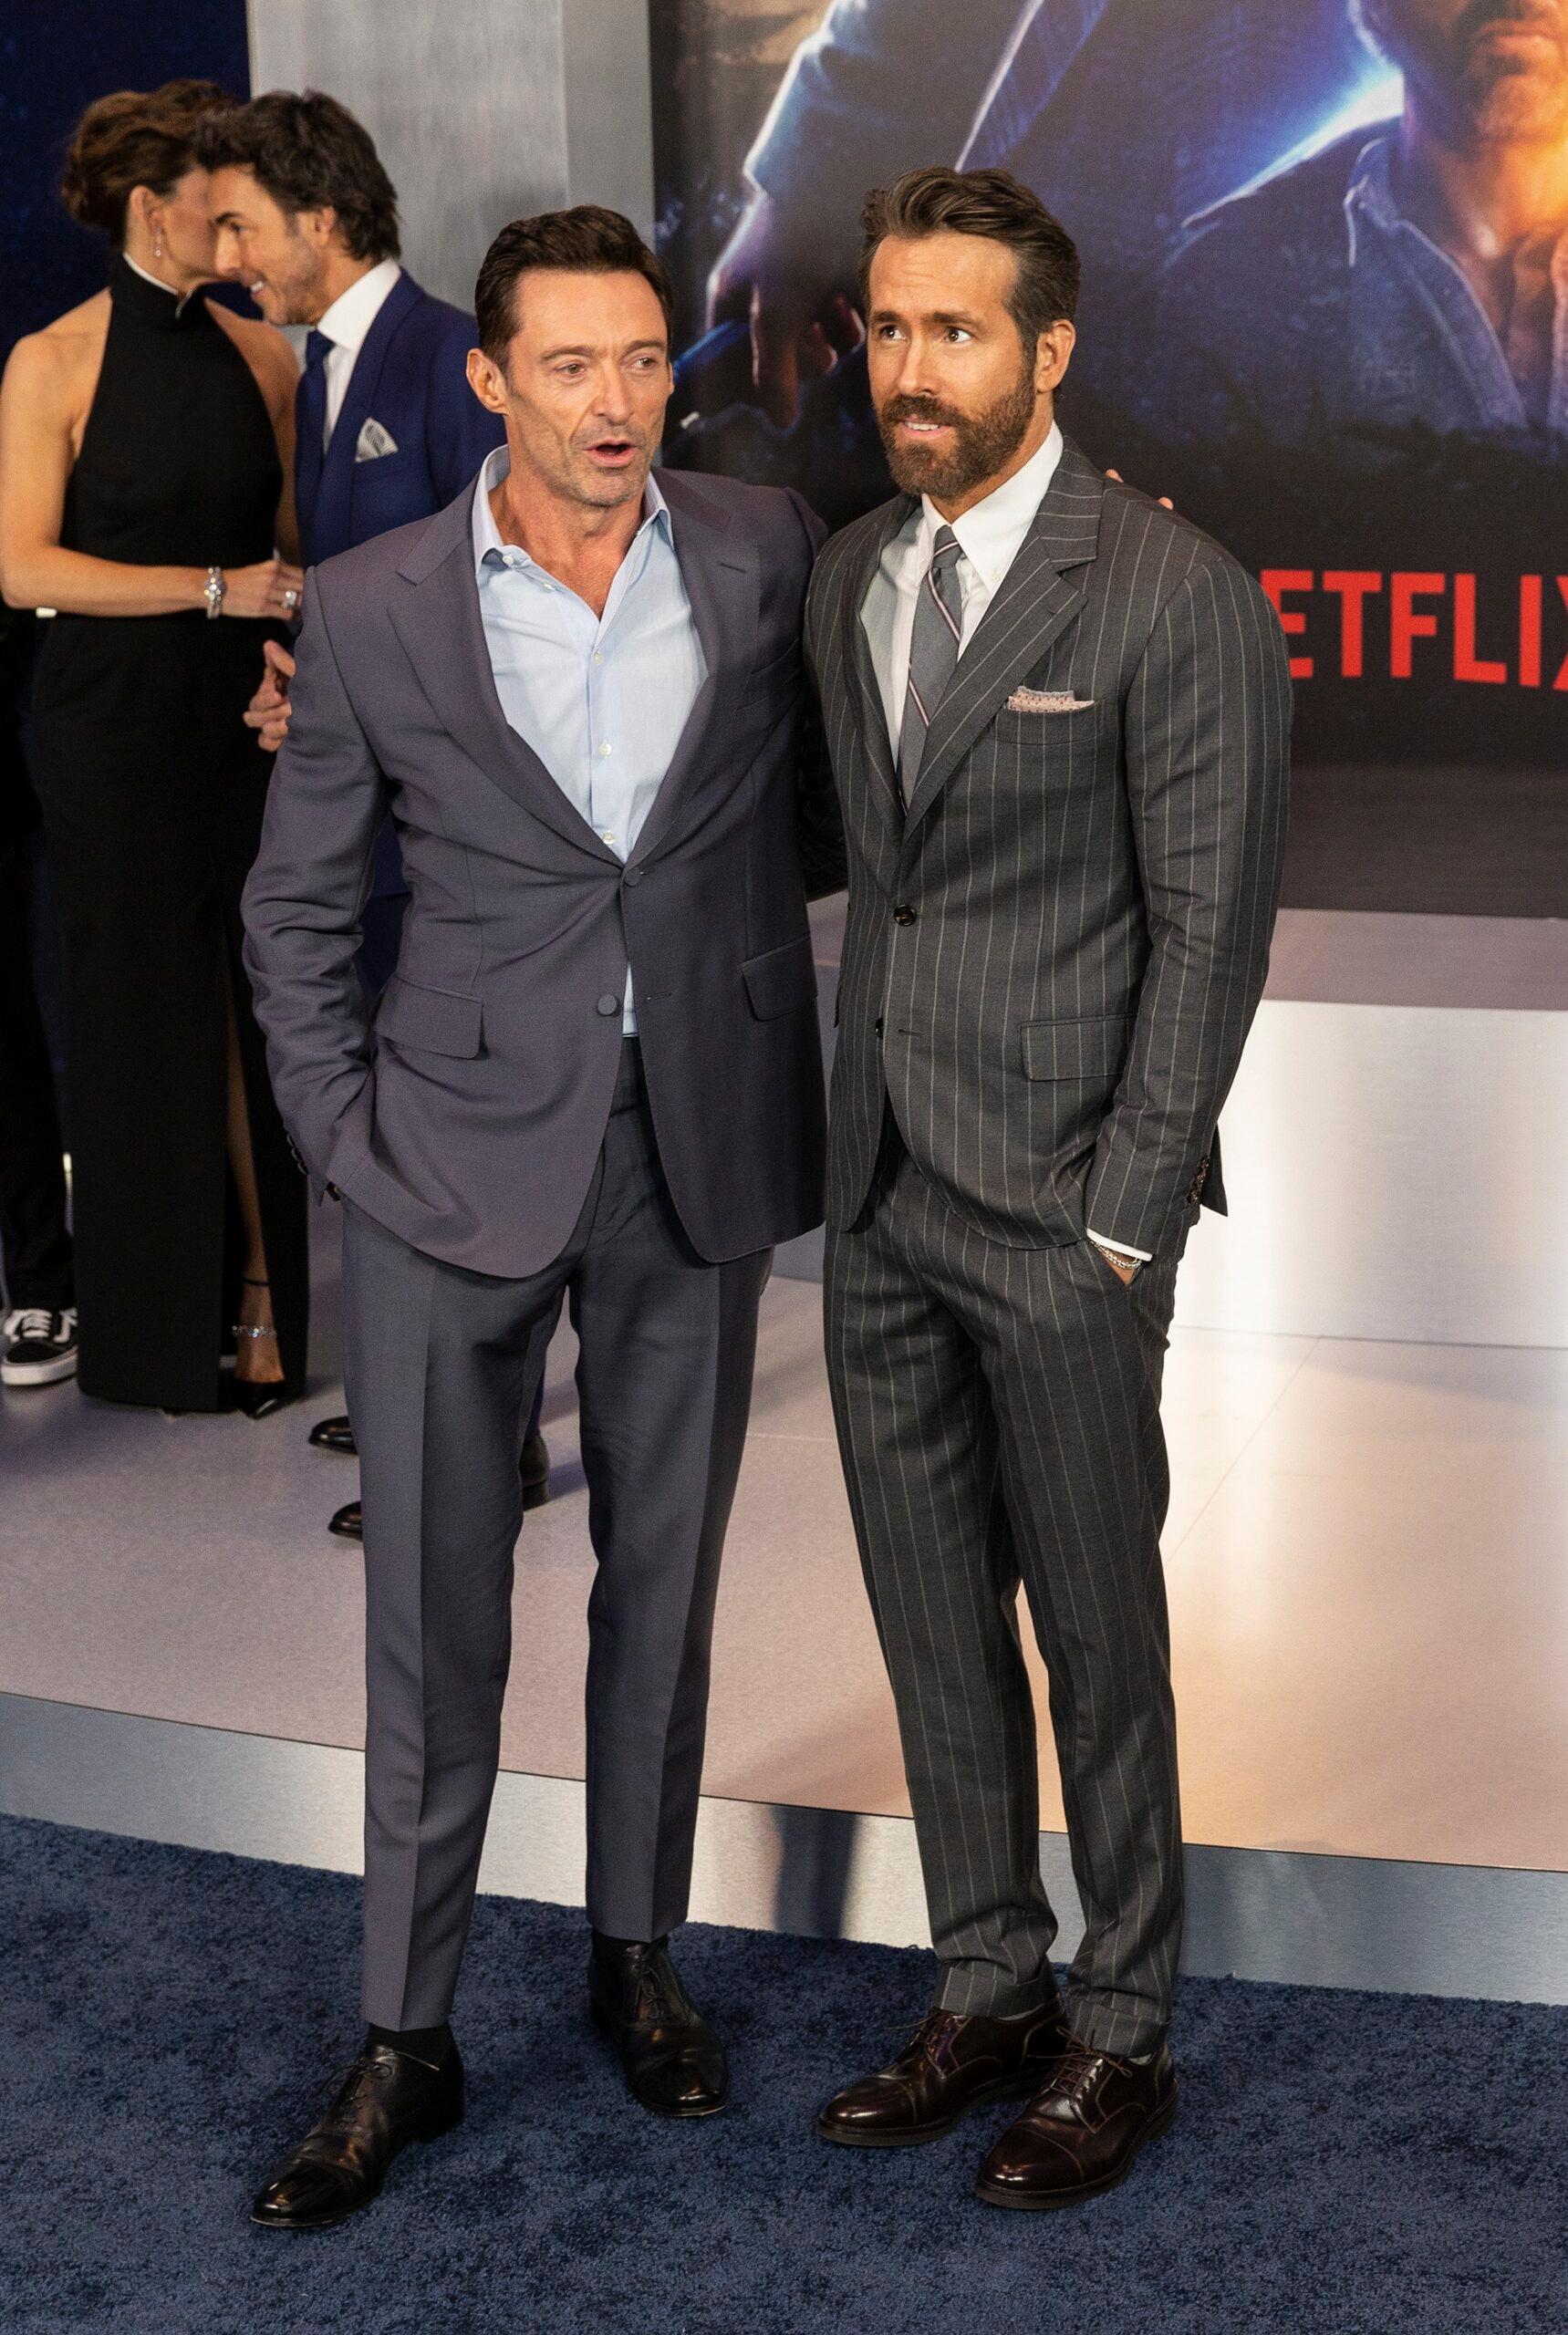 Ryan Reynolds and Hugh Jackman Have 'Real' Bromance, Says Director